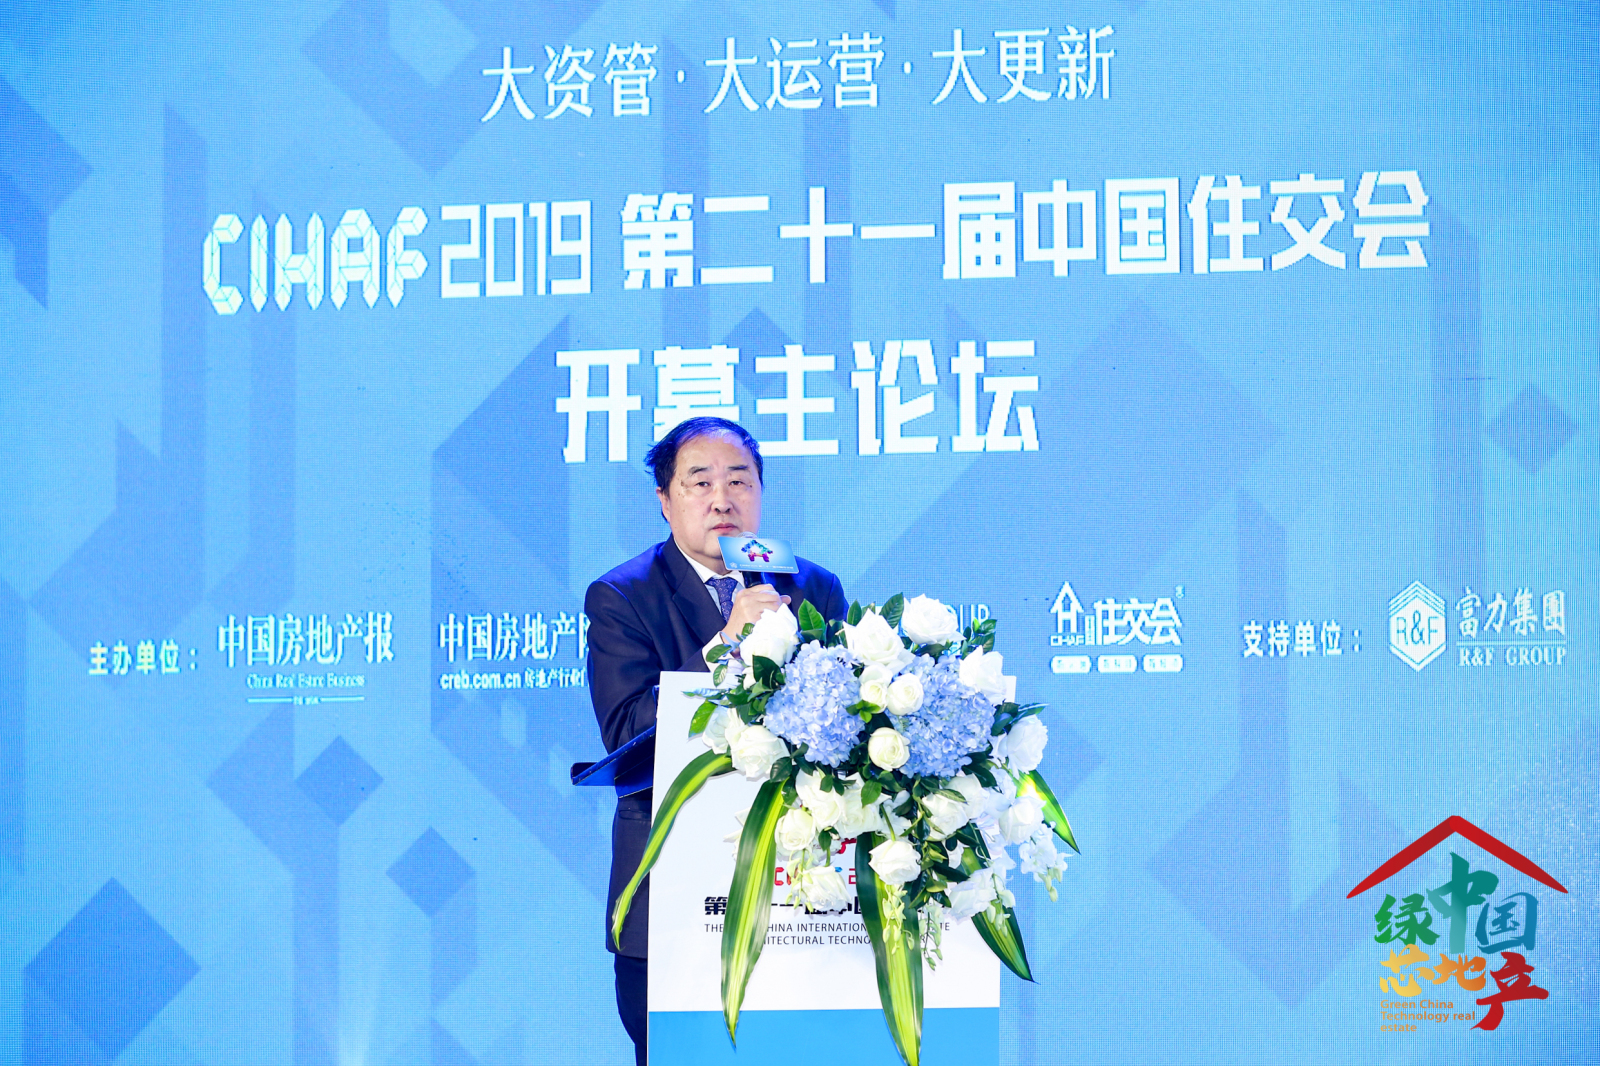 12月4日，陈淮出席：绿中国•芯地产 CIHAF2019第二十一届中国住交会